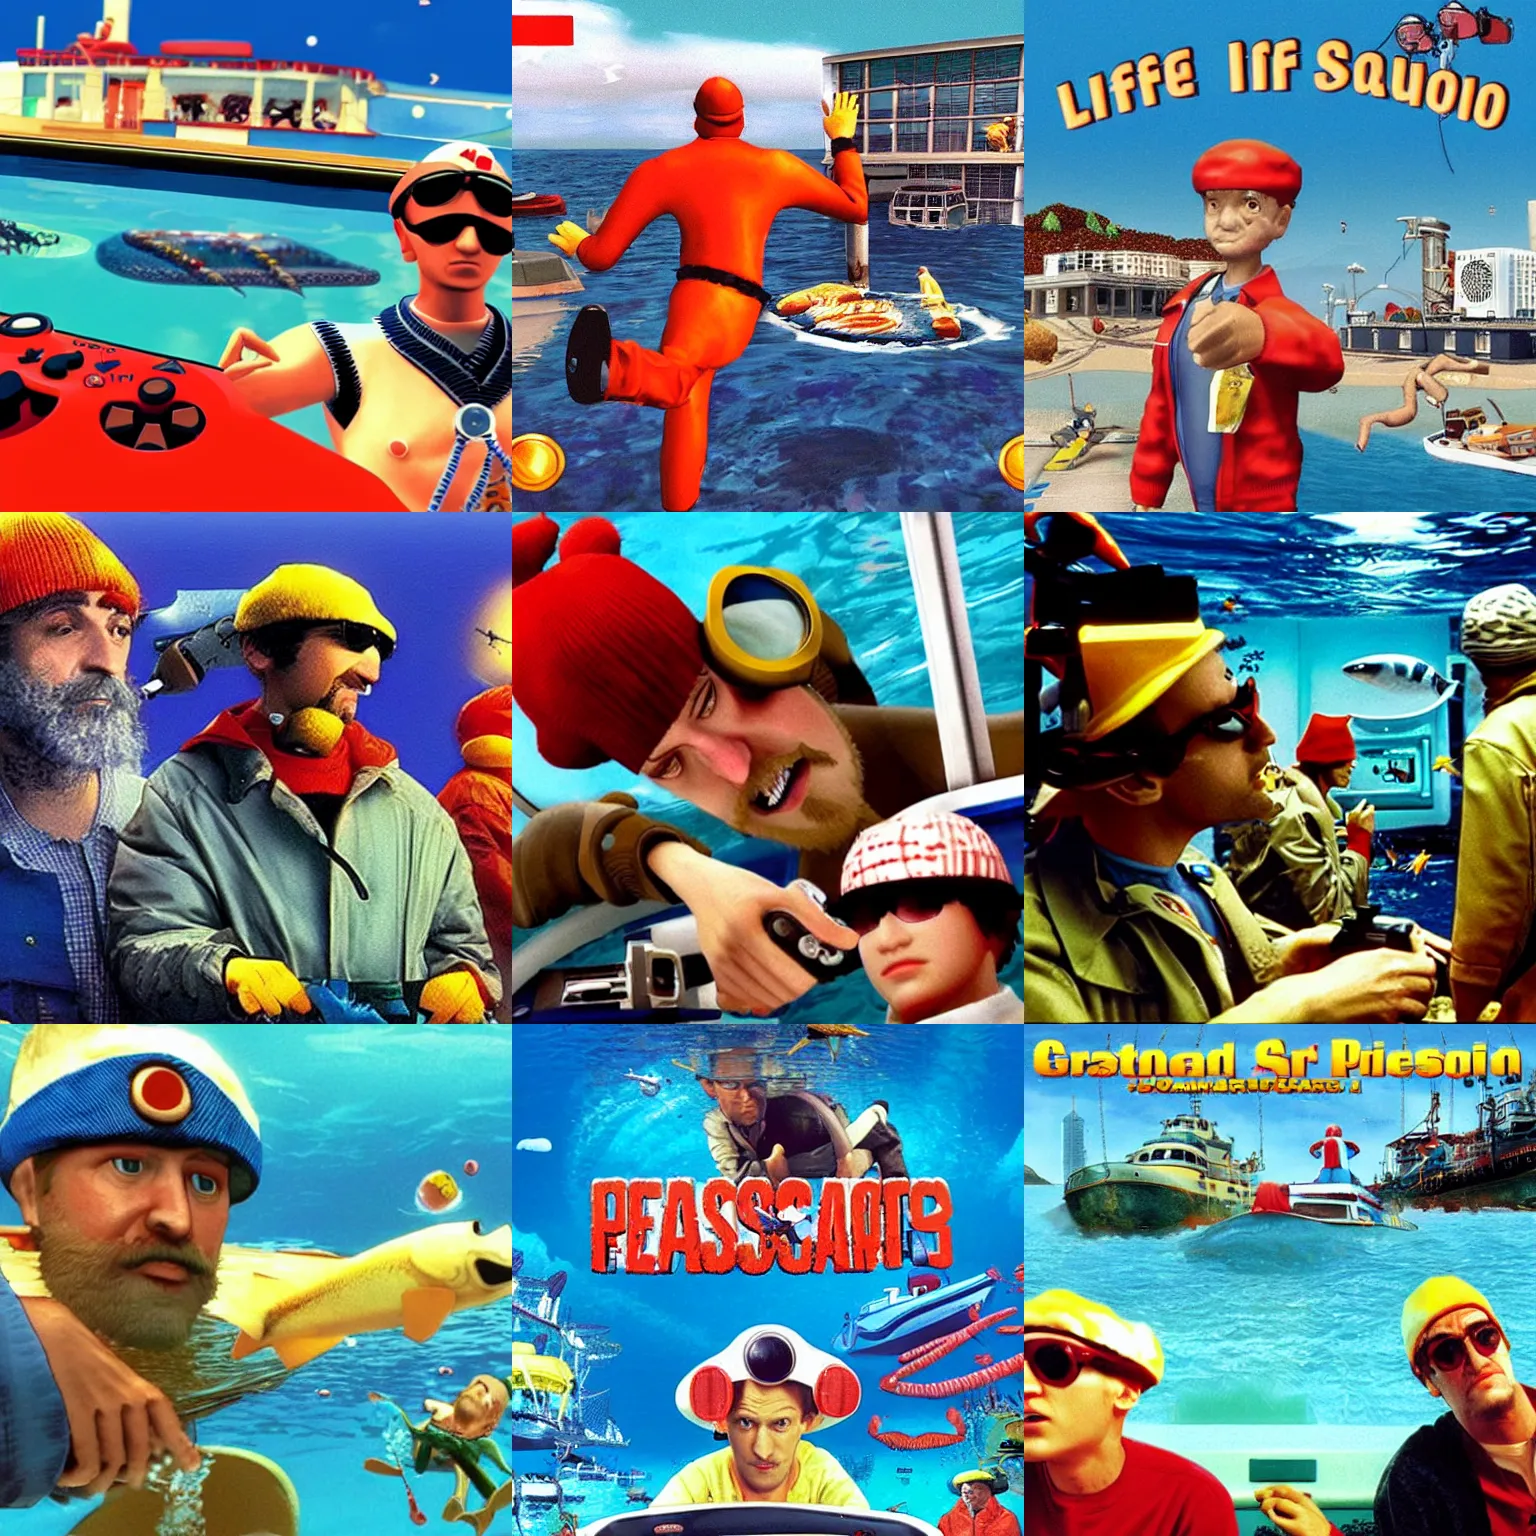 Prompt: “PlayStation 3 Screenshot of The Life Aquatic (2004)”